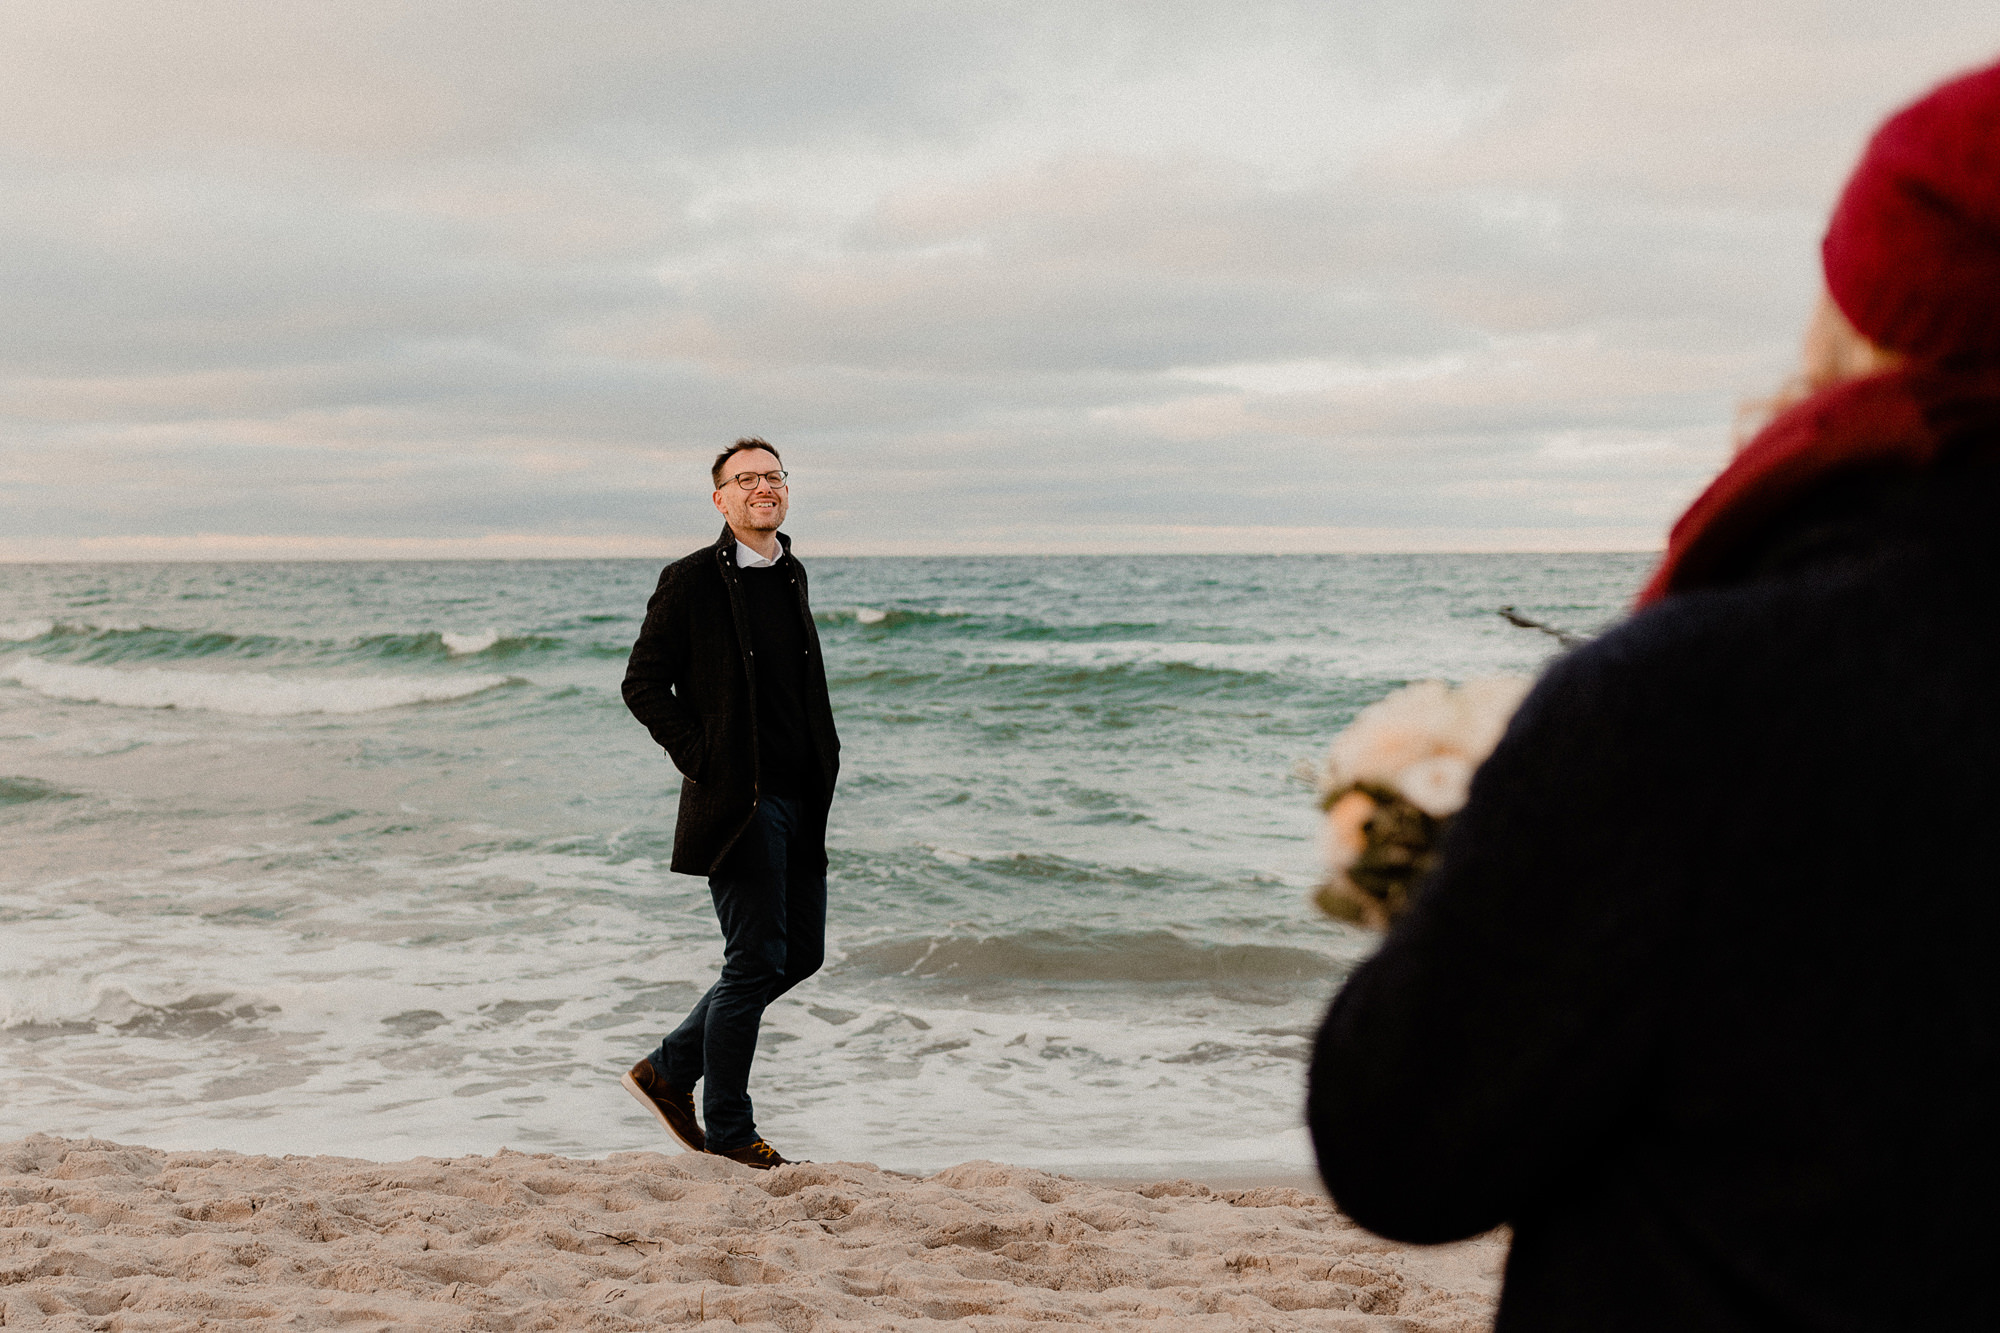 Hochzeitsfotograf Darß - After Wedding Shooting Ahrenshoop - Fotograf Kurhaus Zingst - Hochzeitsshooting Fischland Darß - Hochzeitsfotograf Ostsee